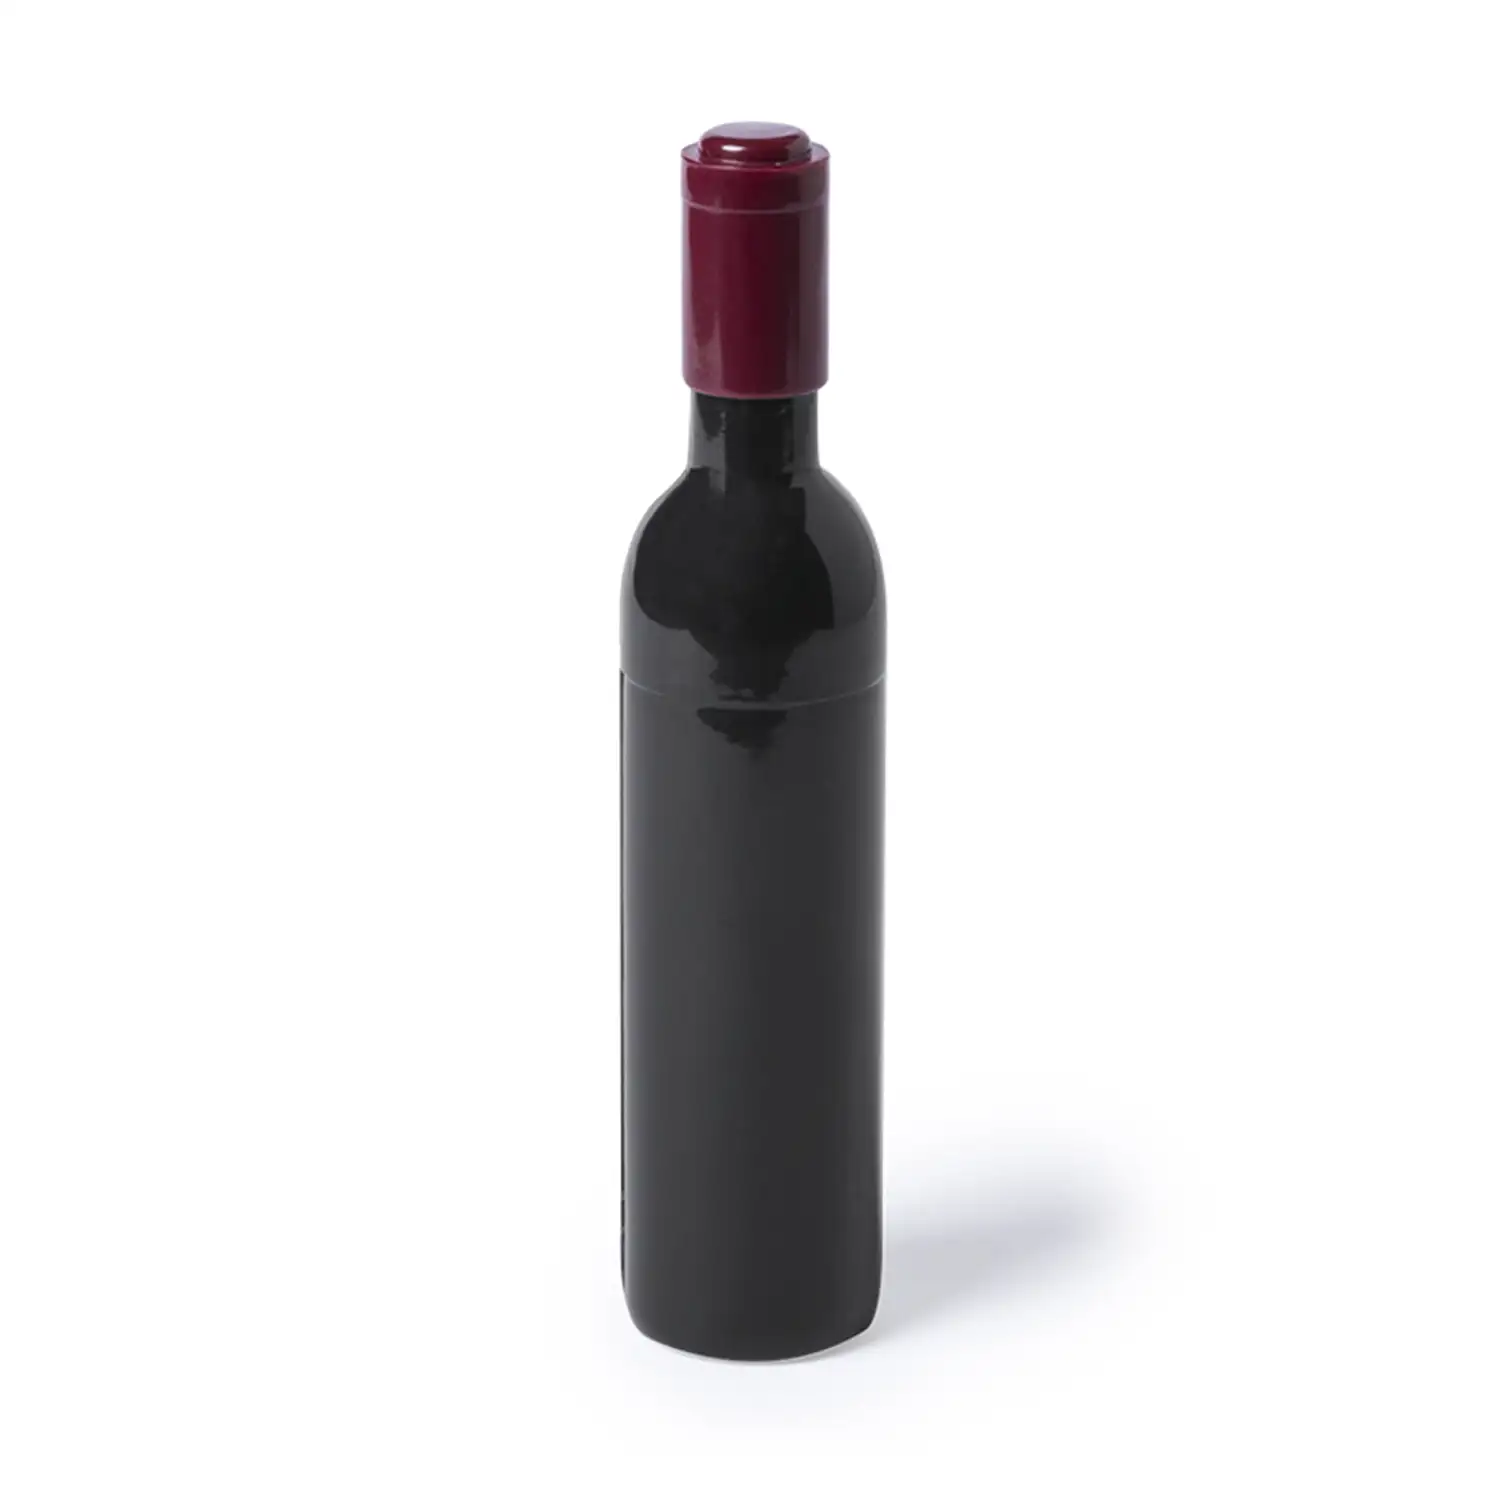 Sacacorchos magnético Nolix con forma de botella de vino.